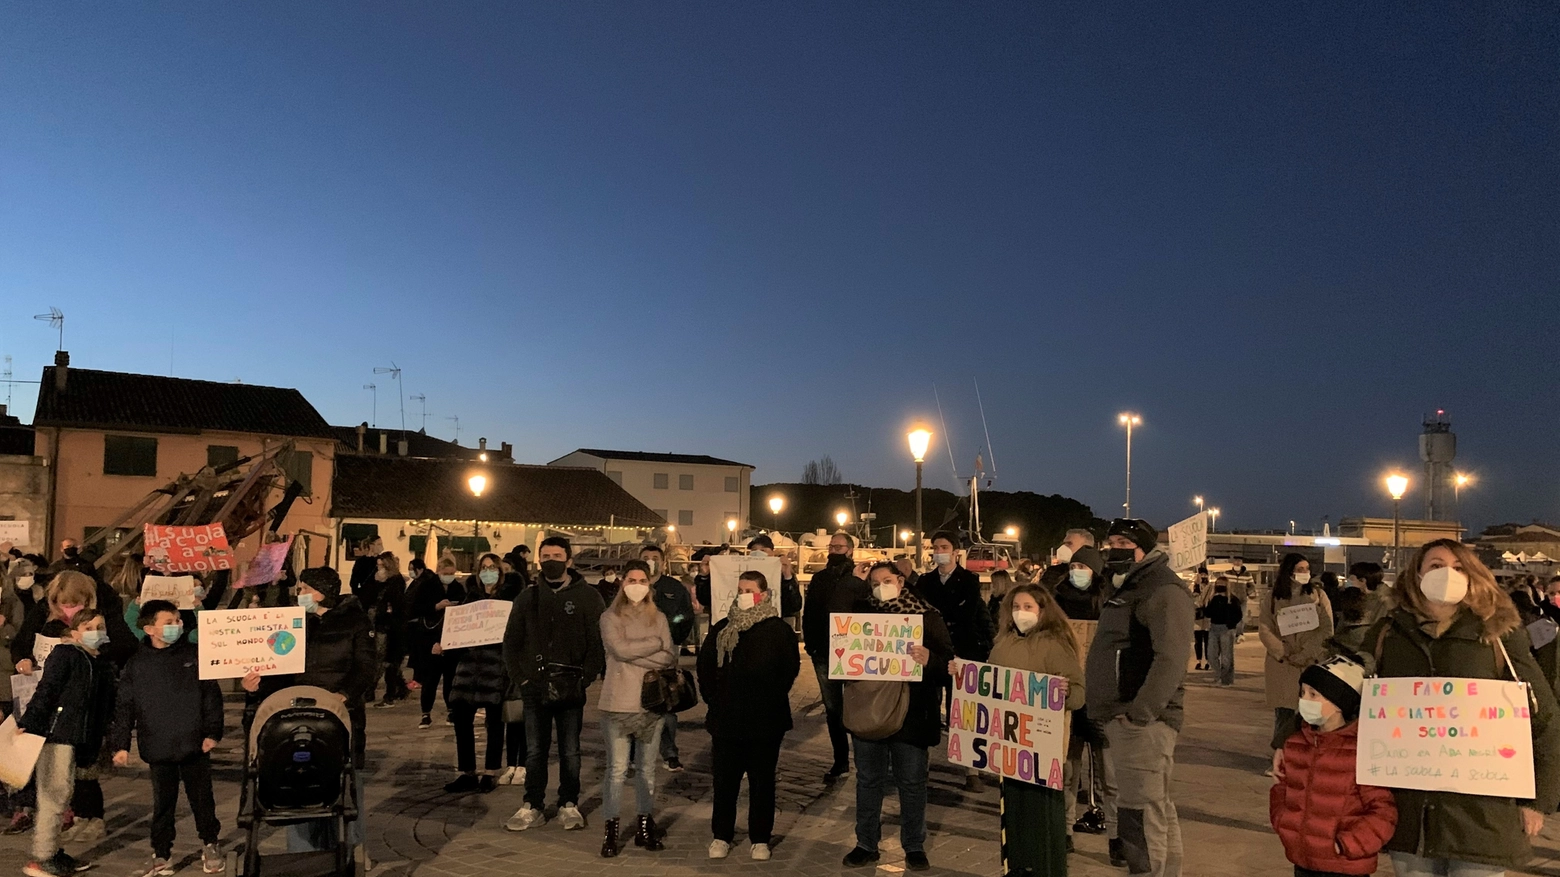 Zona arancione scuro Romagna: la protesta a Cesenatico